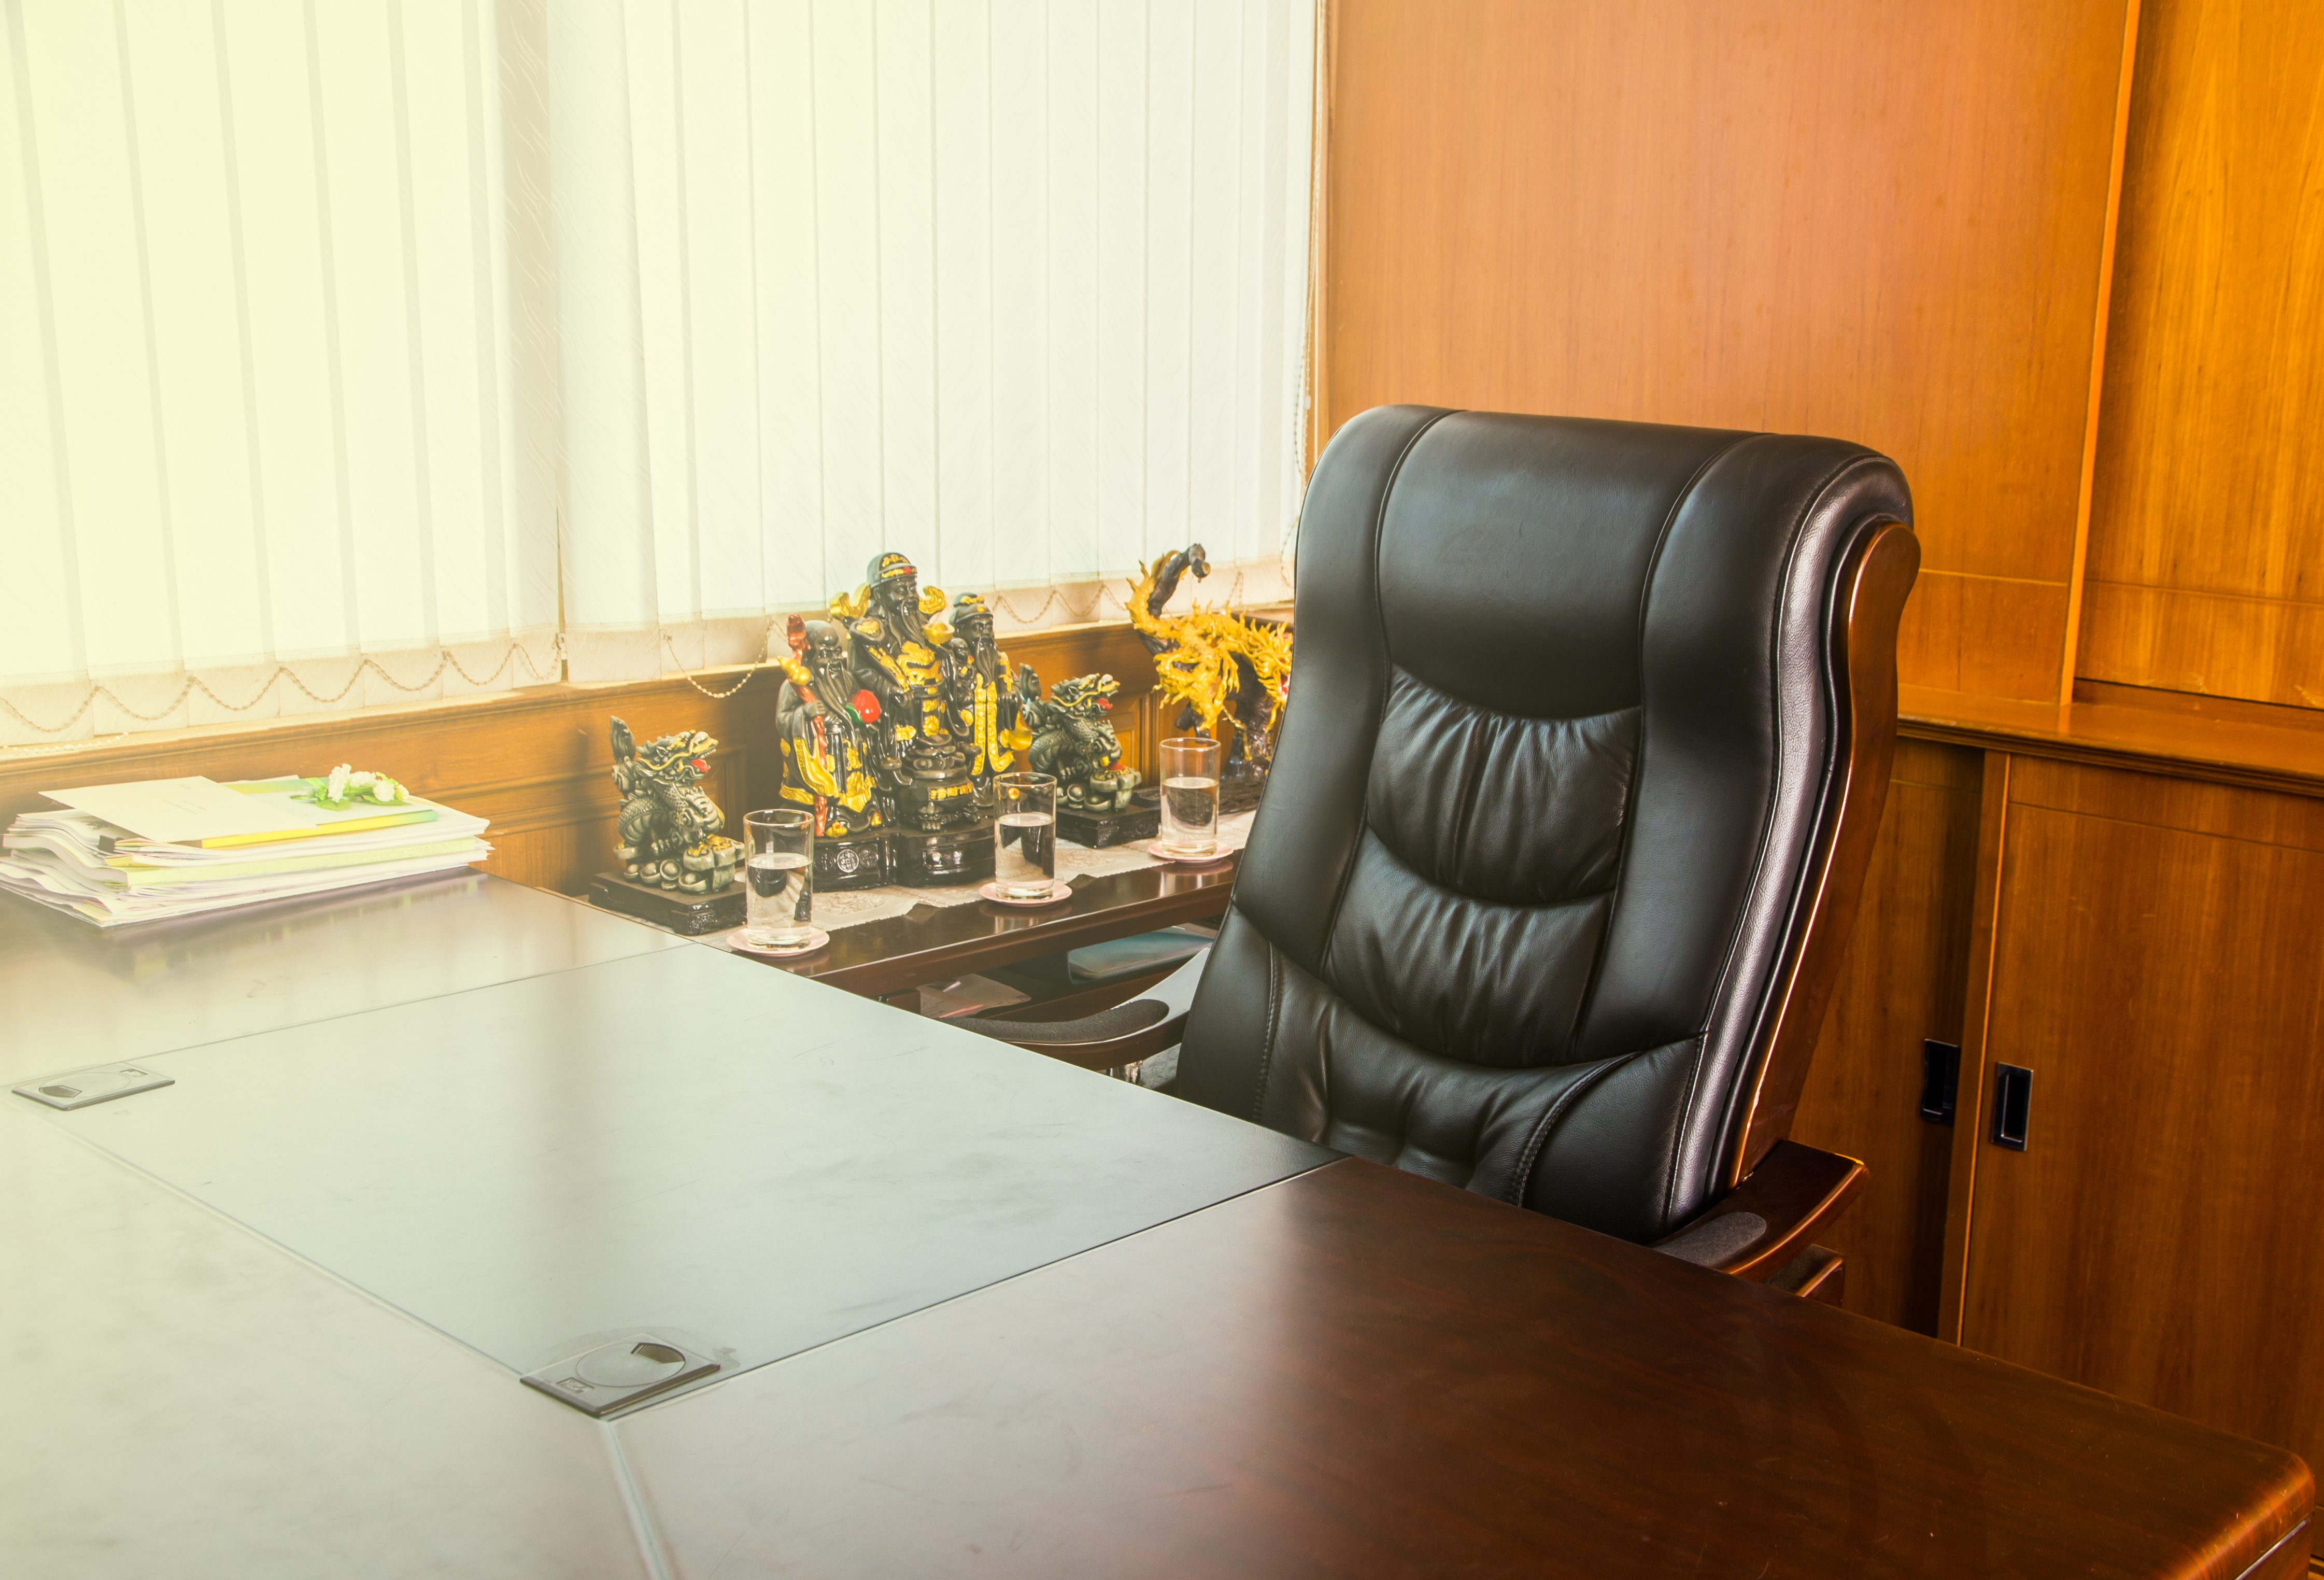 Lugar de trabajo vacío en una oficina | Fuente: Shutterstock